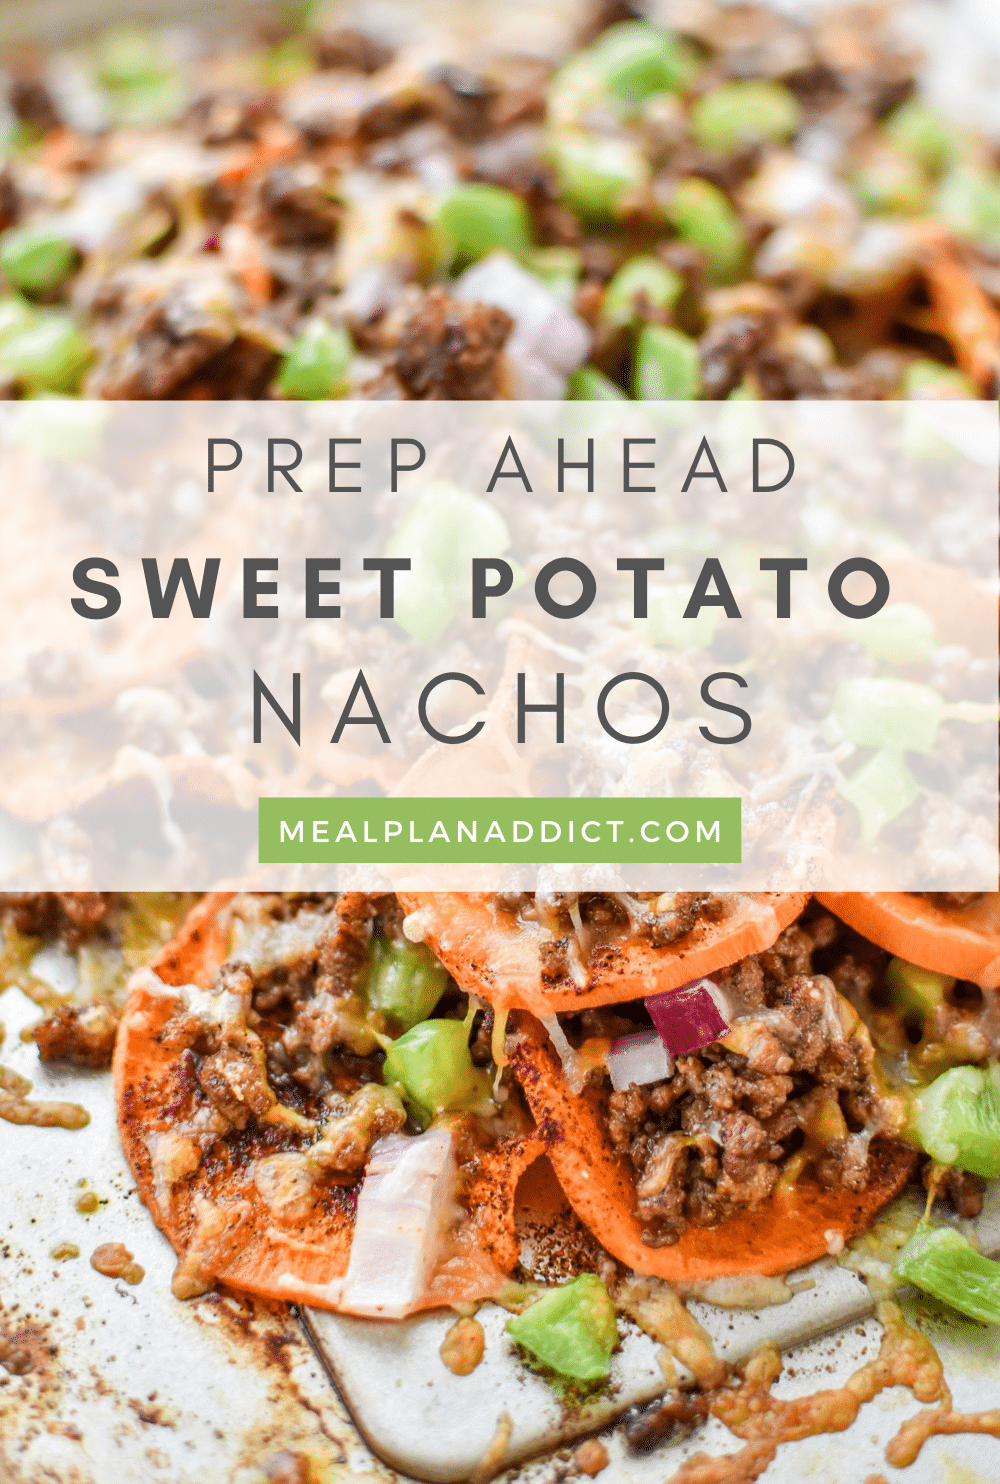 Sweet potato nachos pin for Pinterest